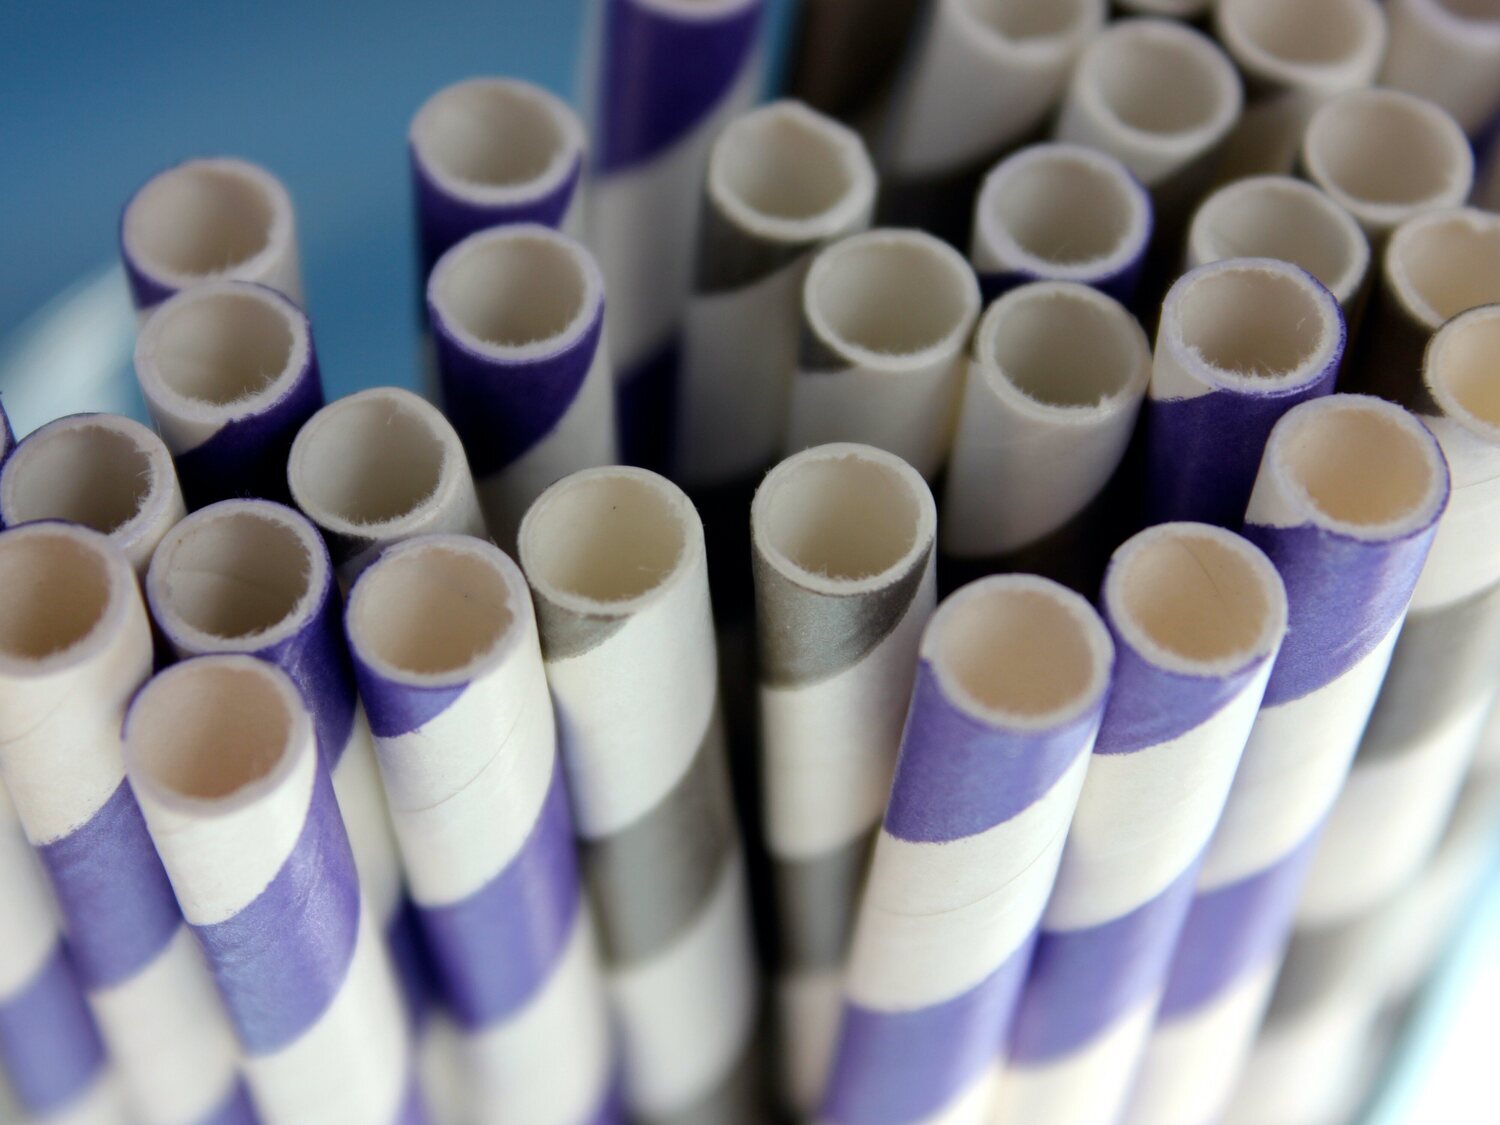 Las pajitas de papel contienen sustancias tóxicas, según un estudio - Los  Replicantes